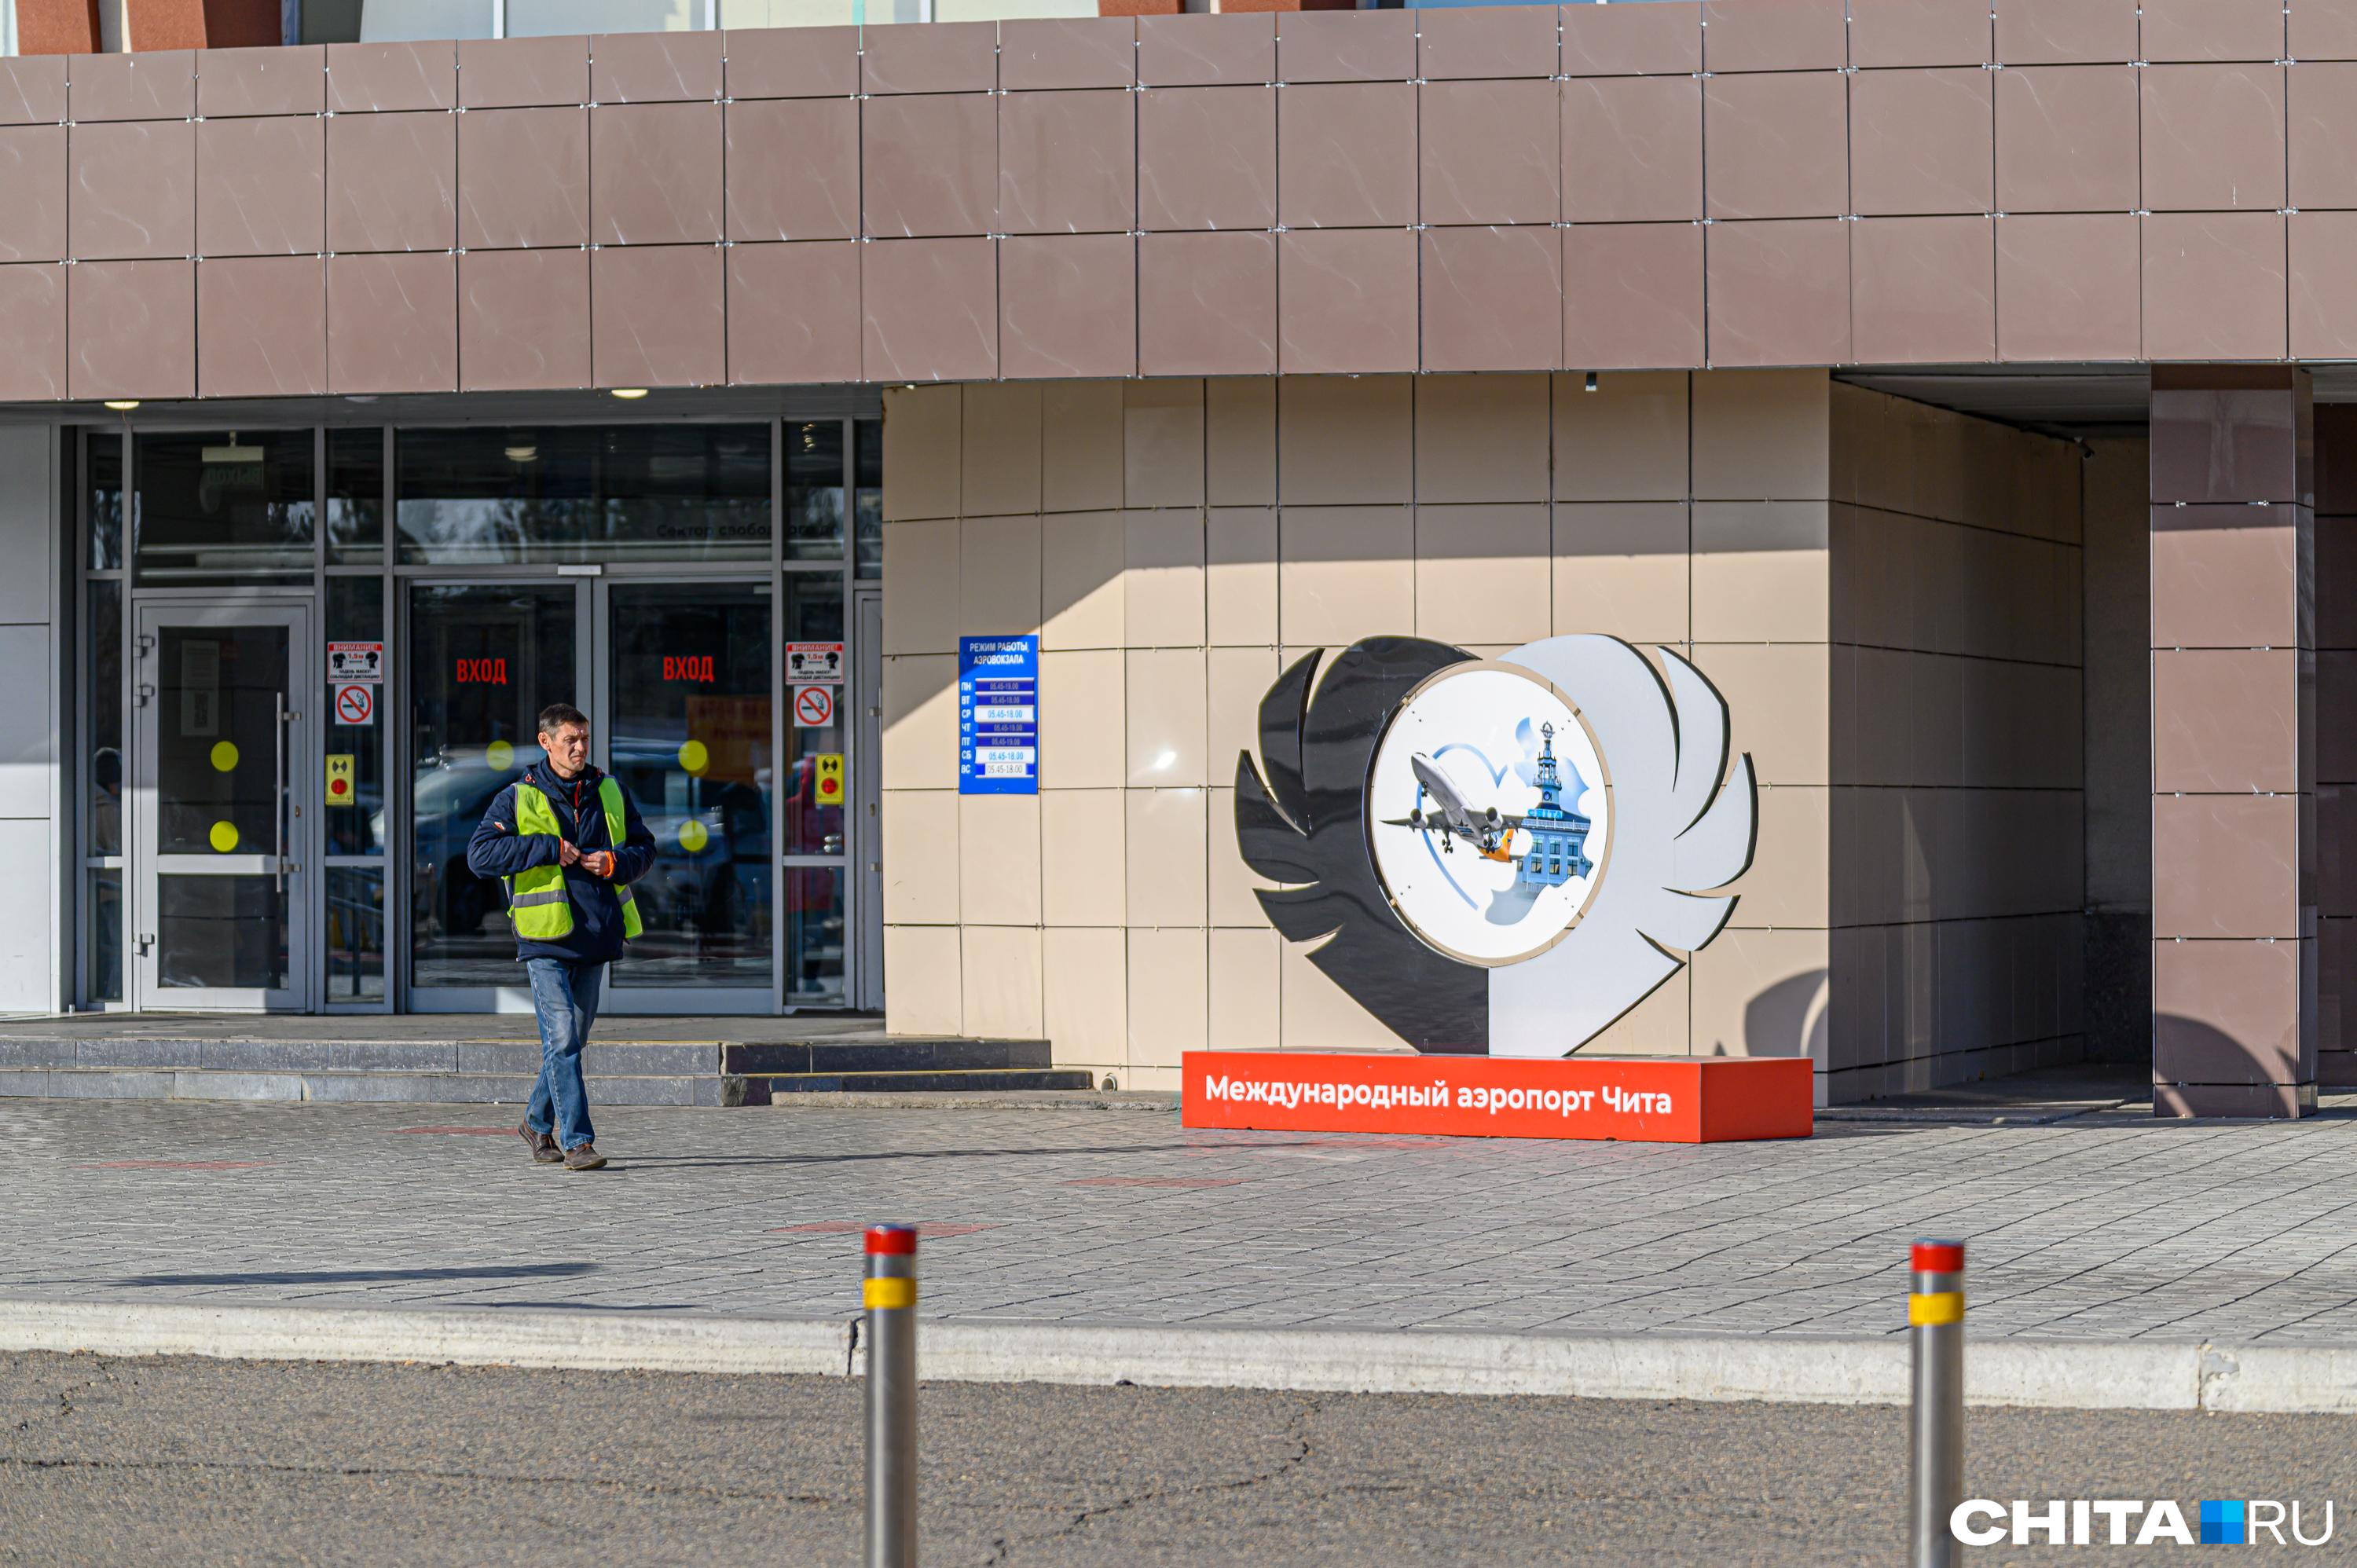 Аэропорт в Чите с 1 апреля вновь начнет работать в круглосуточном режиме